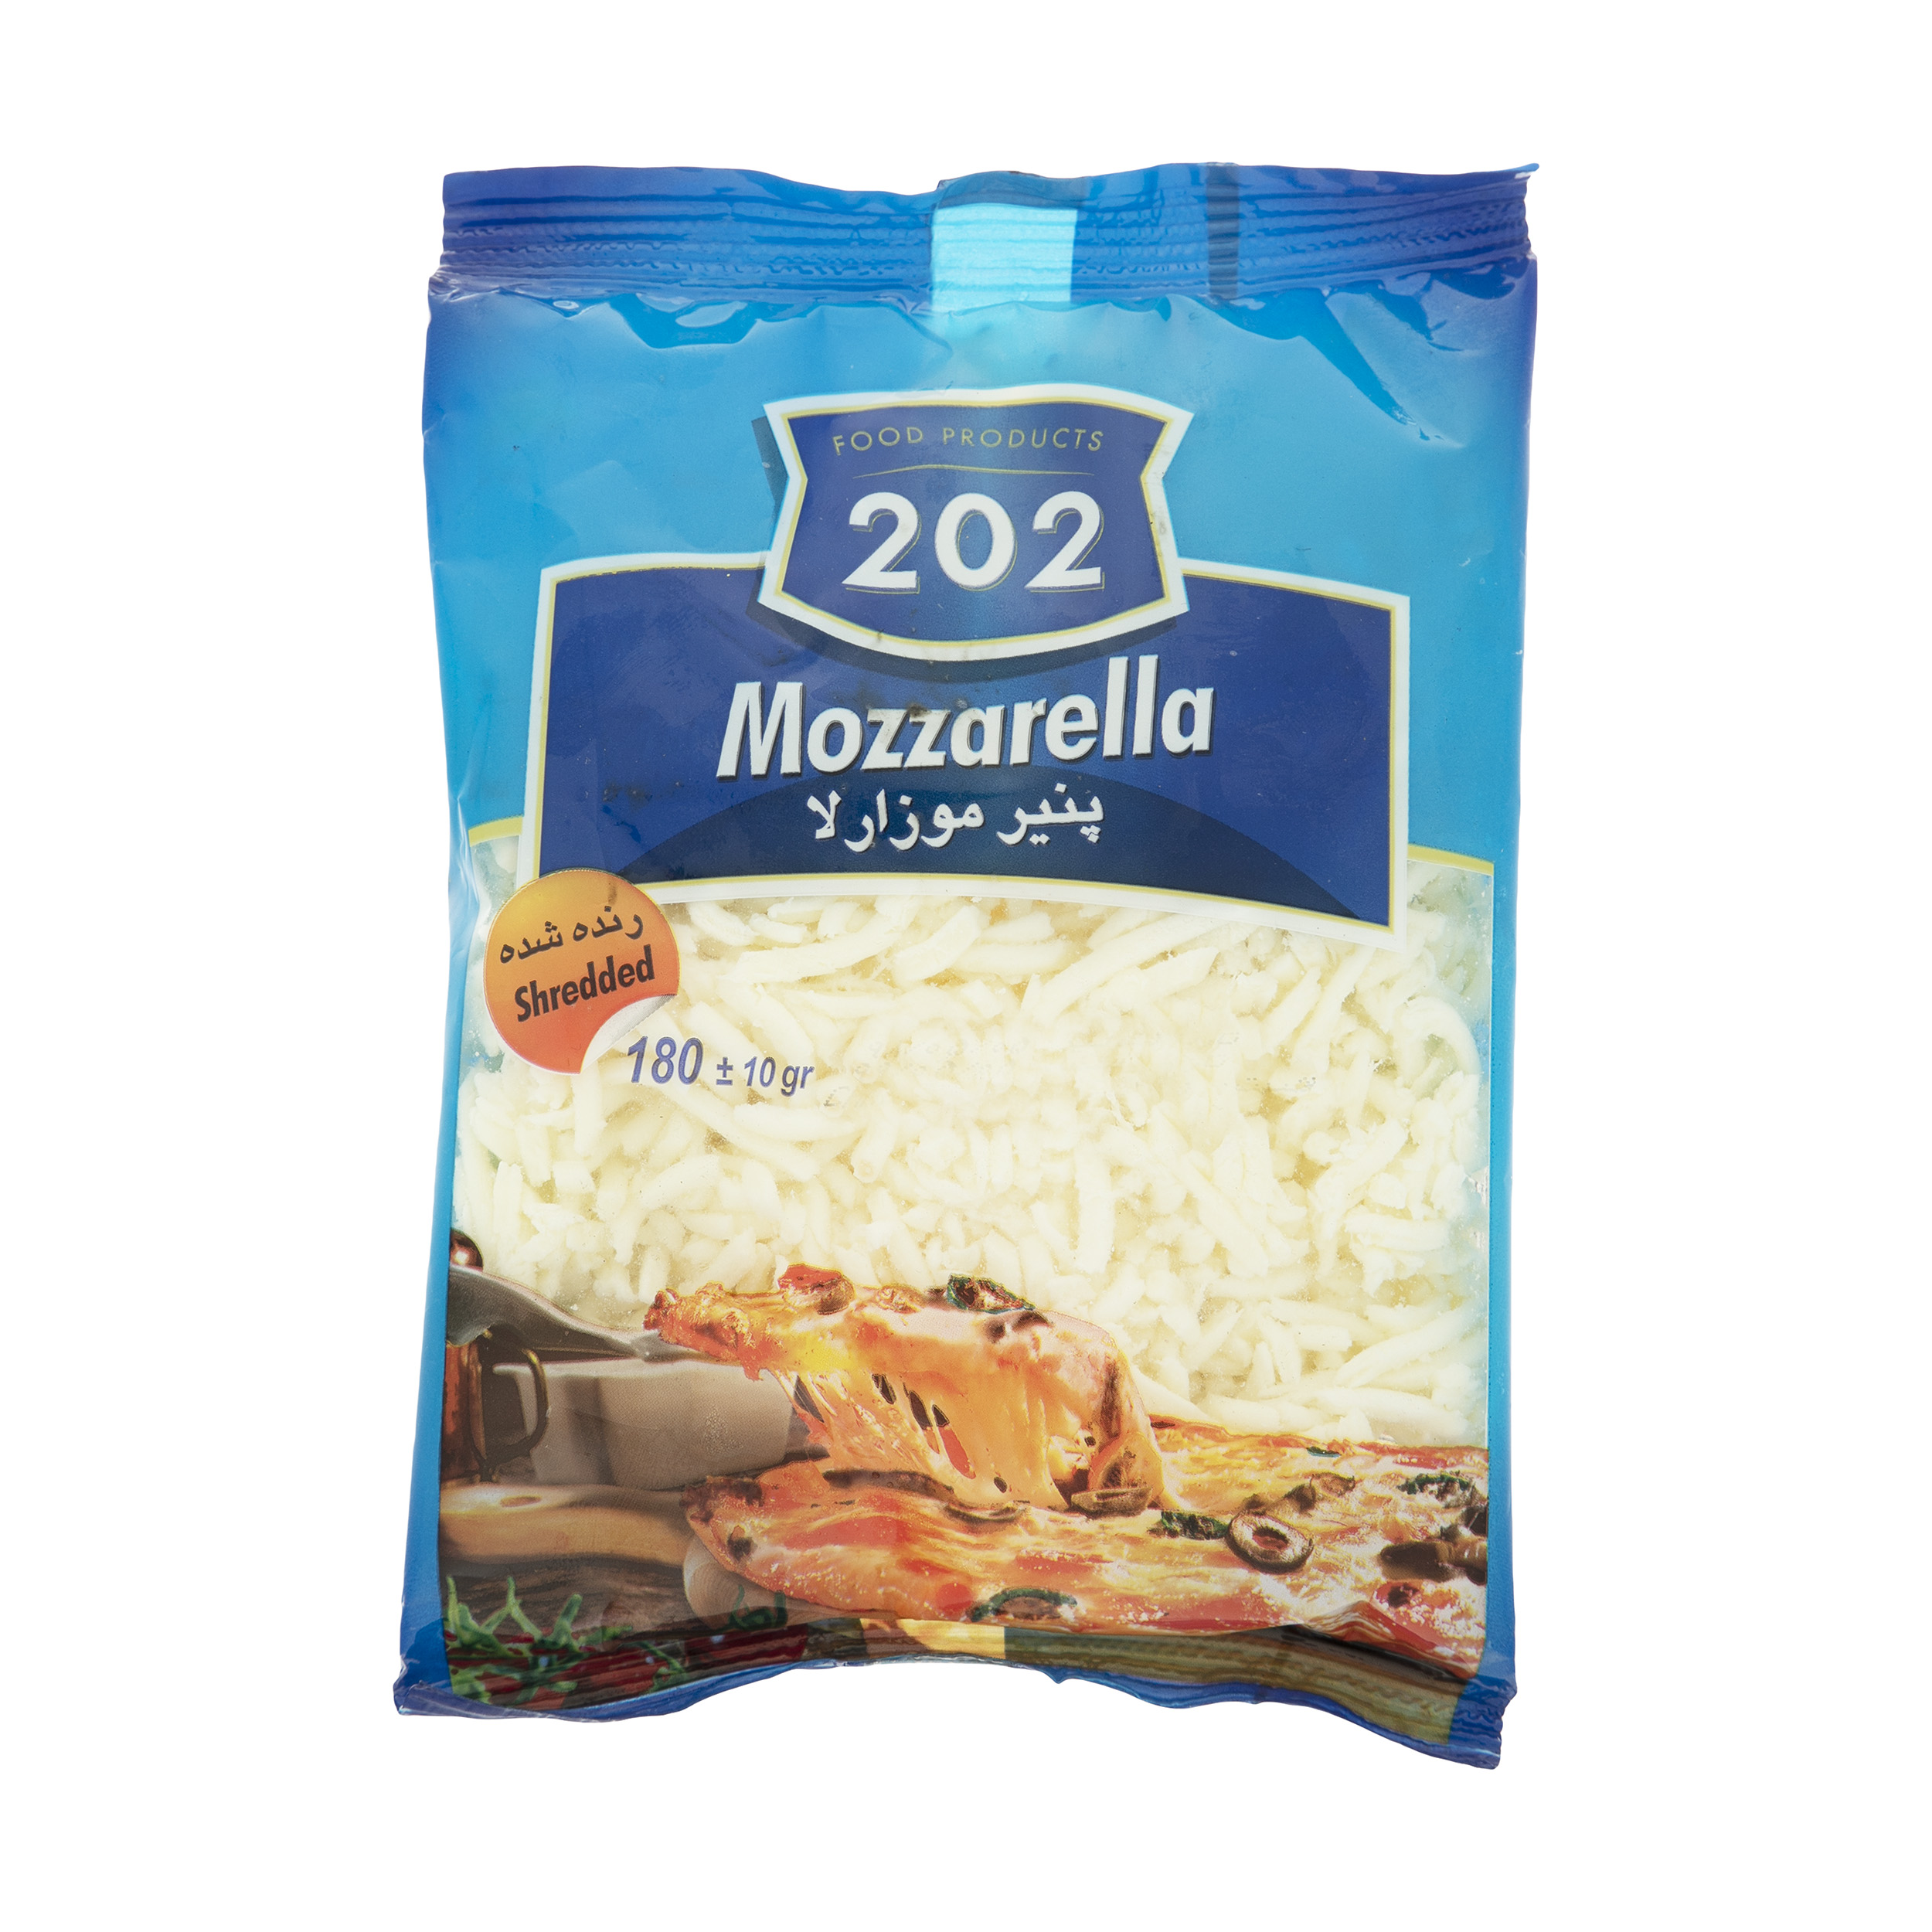 پنیر پیتزا موزارلا 202 وزن 180 گرم